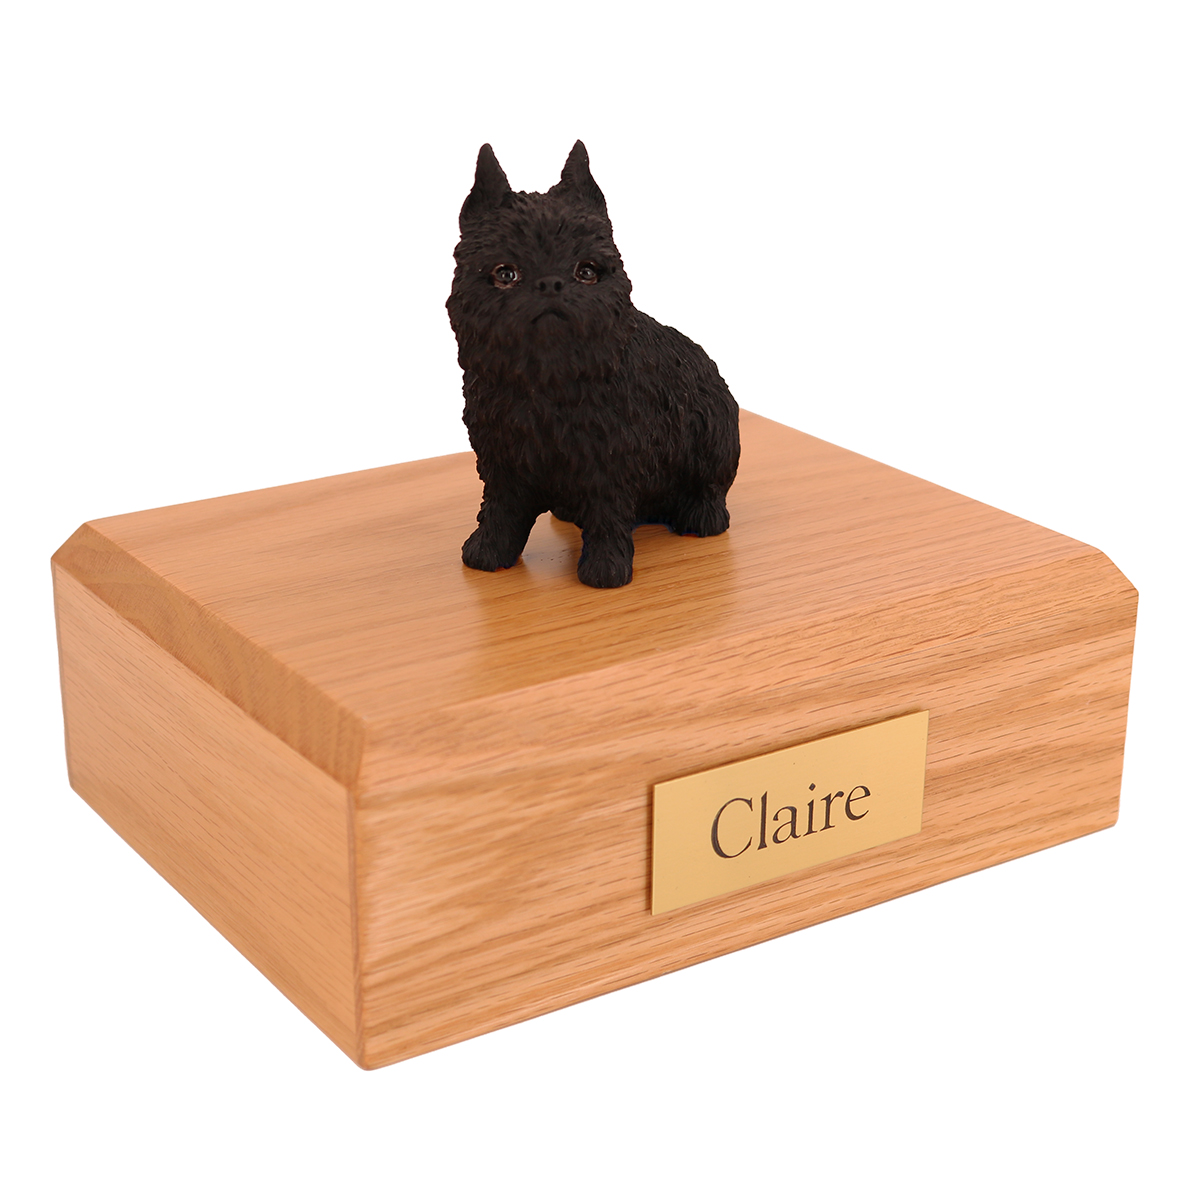 Dog, Brussels Griffon, Black - Figurine Urn